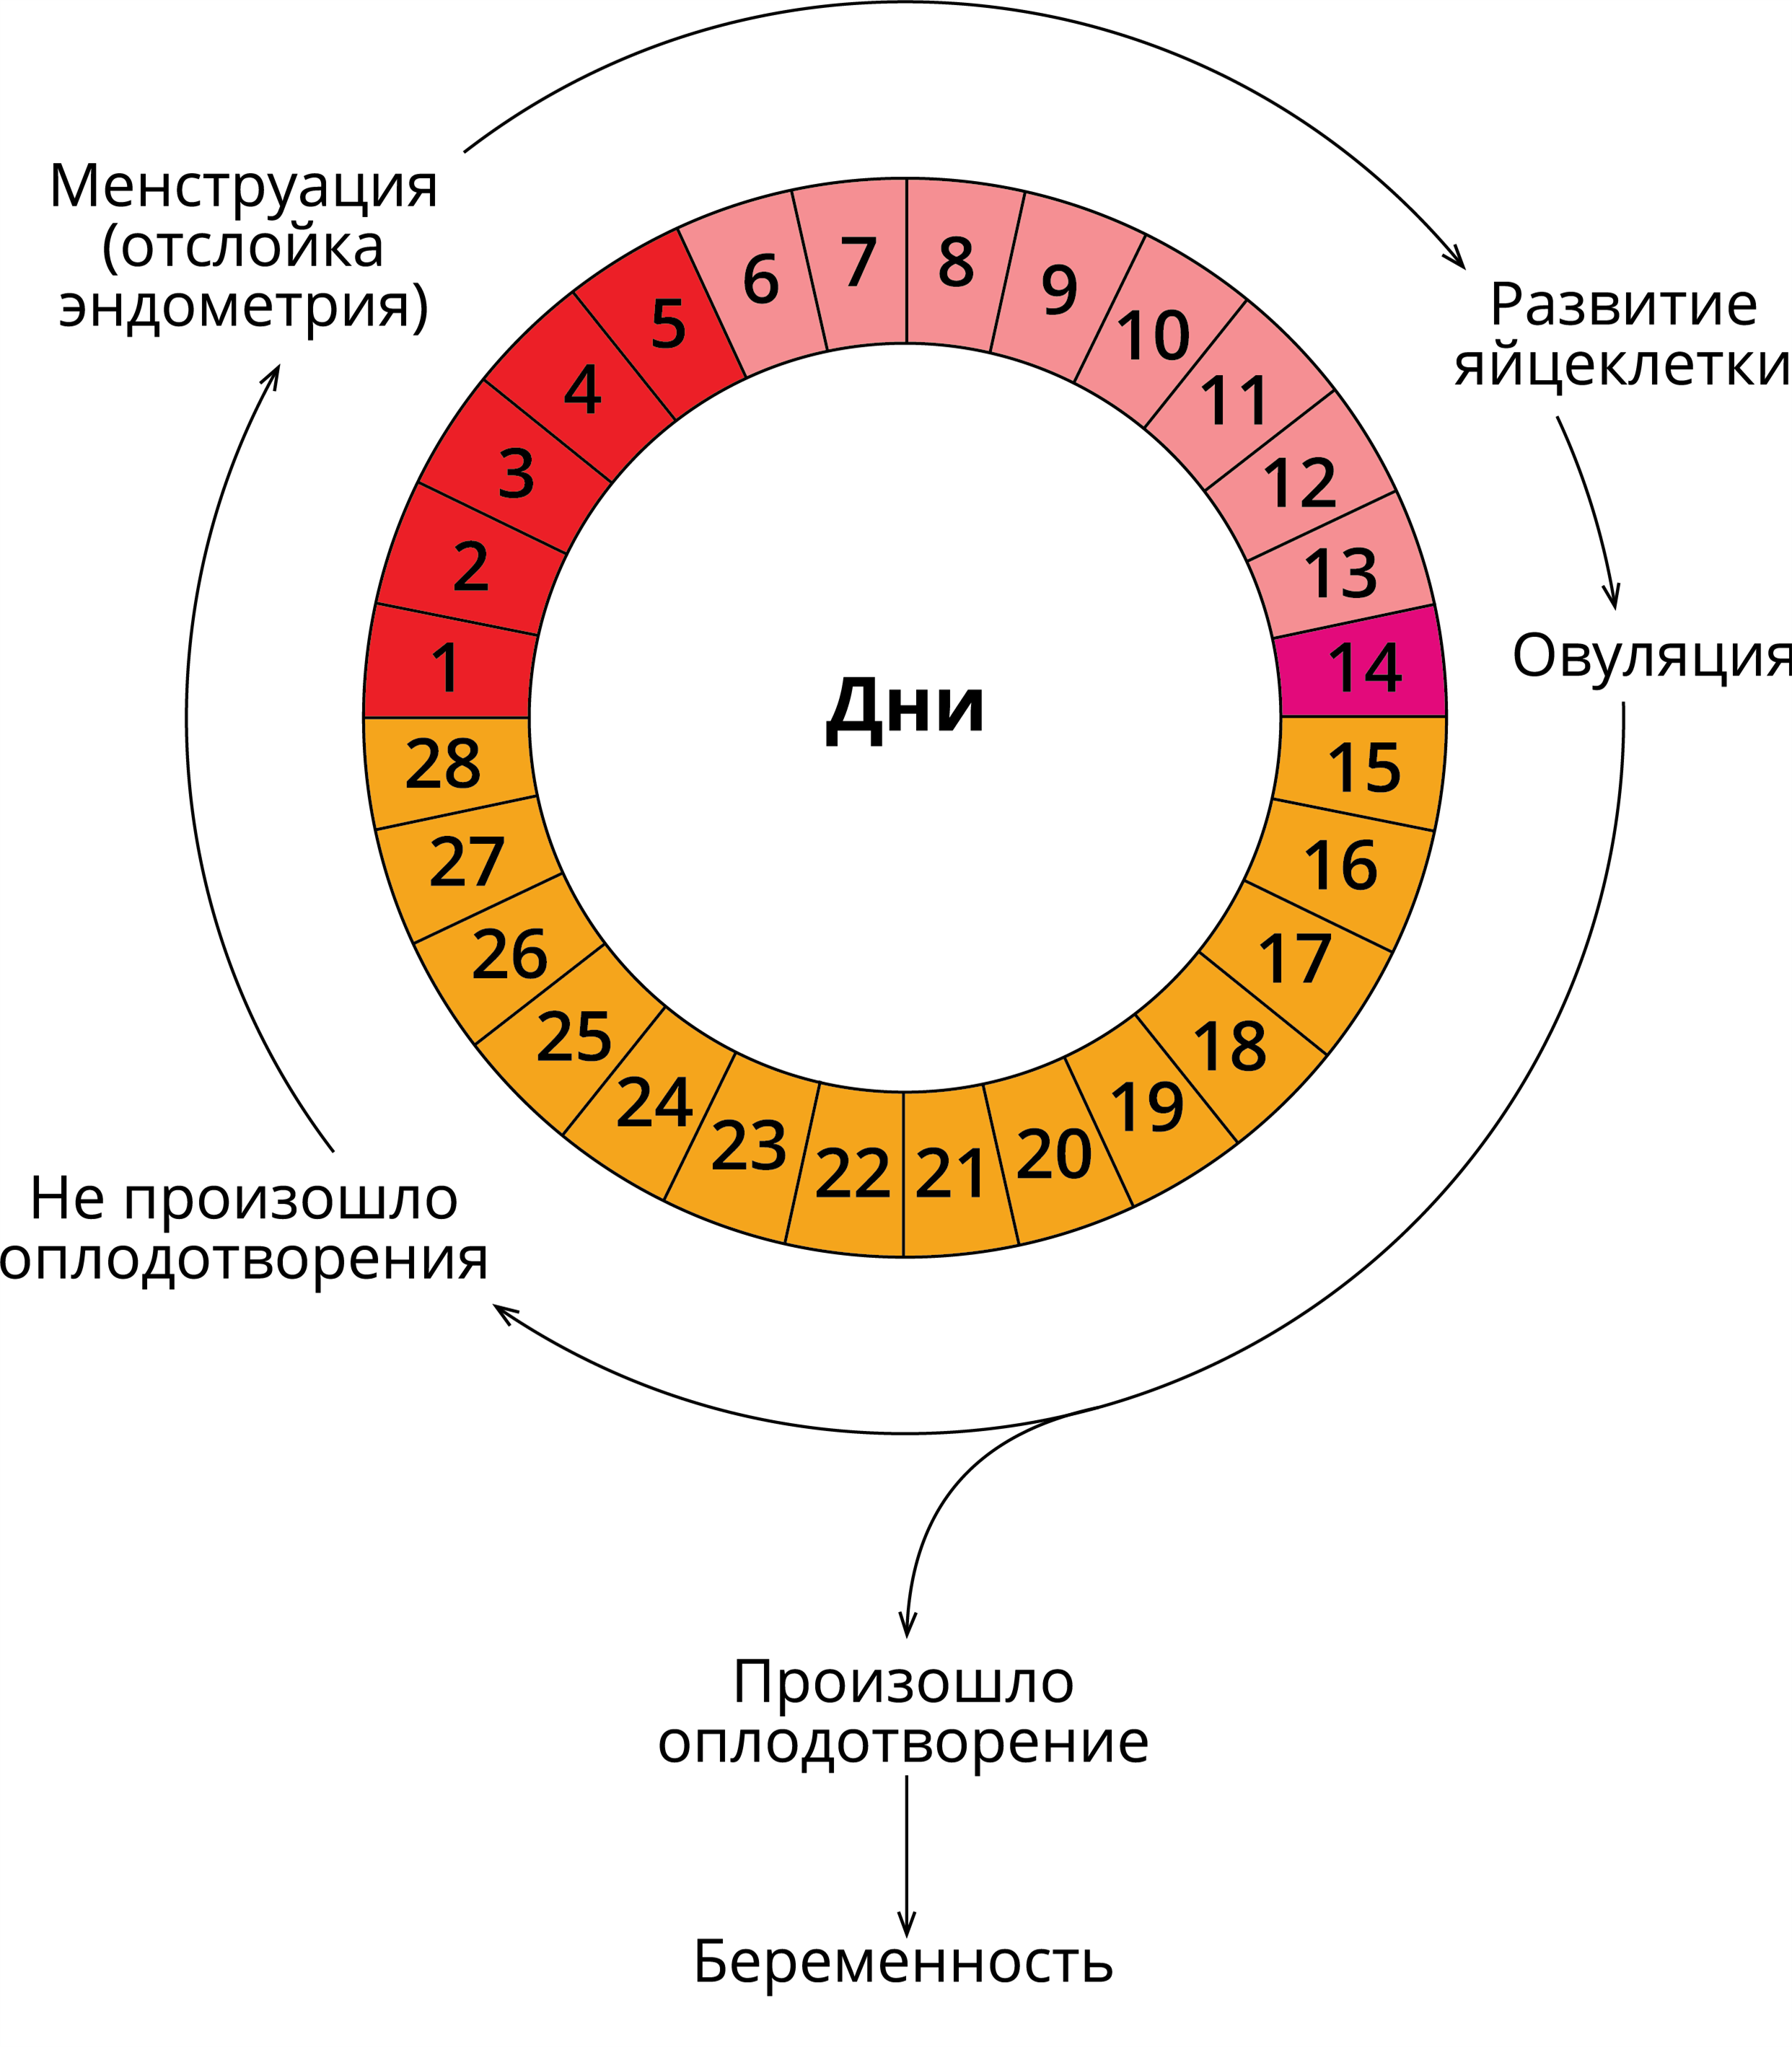 Лечение овуляции. Схема цикличность этапов менструального цикла. Двухфазный менструационный цикл схема. Фазы менструационного цикла физиология. Фазы менструационного цикла анатомия.